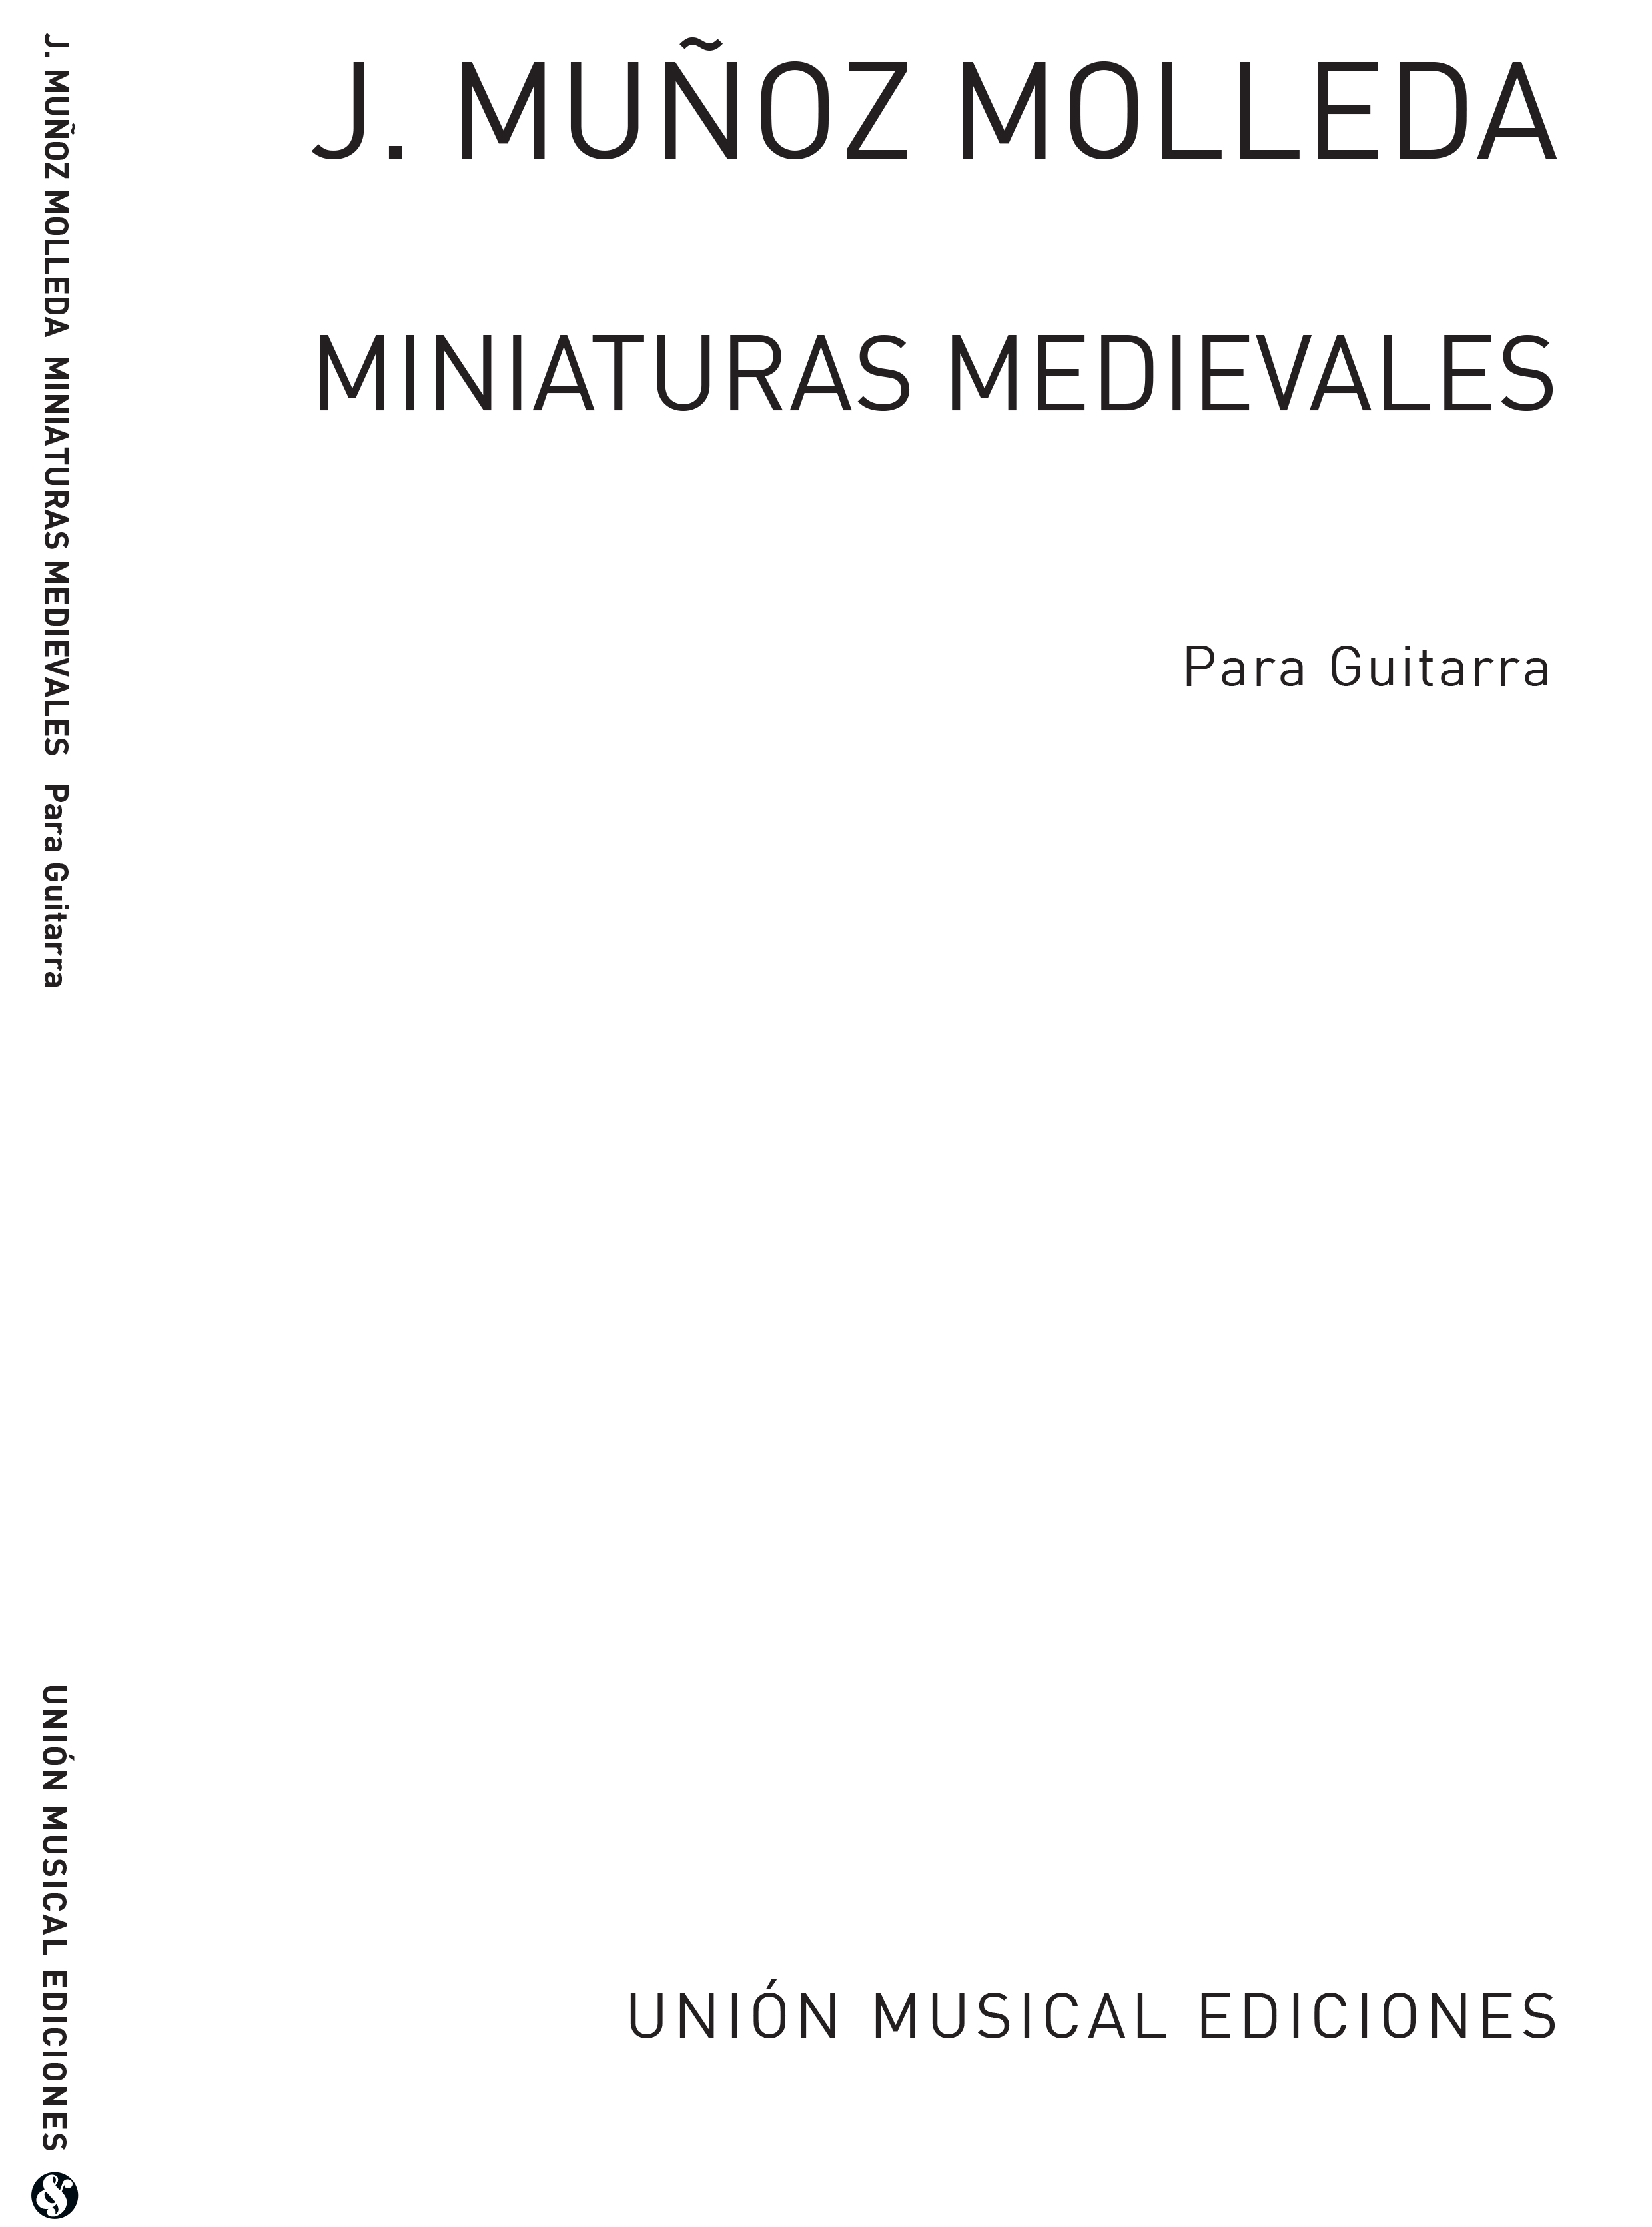 Munoz: Miniaturas Medievales: Guitar